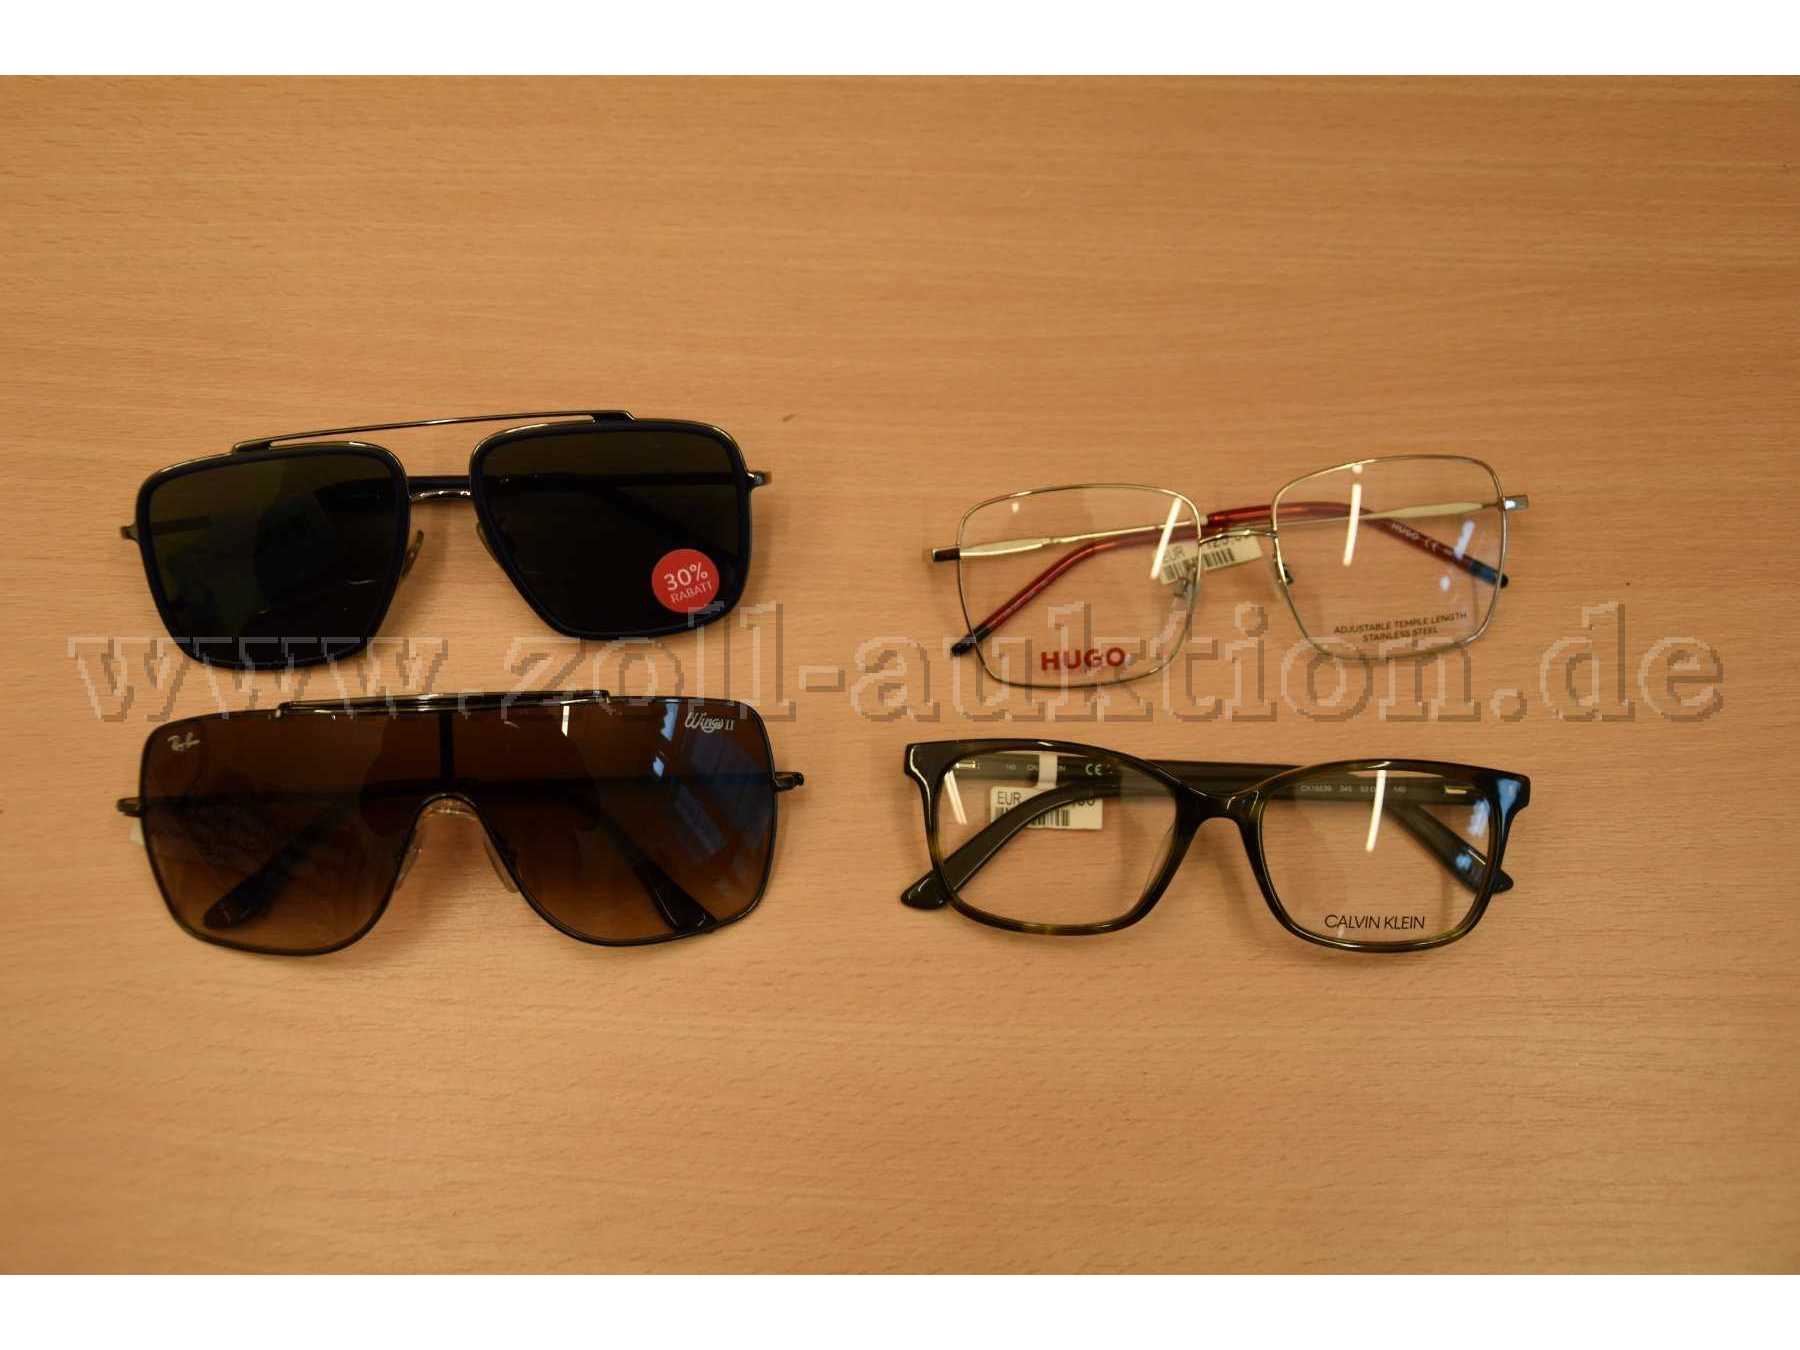 2 Sonnenbrillen und 2 Brillen ohne Sehstärke - Neuware